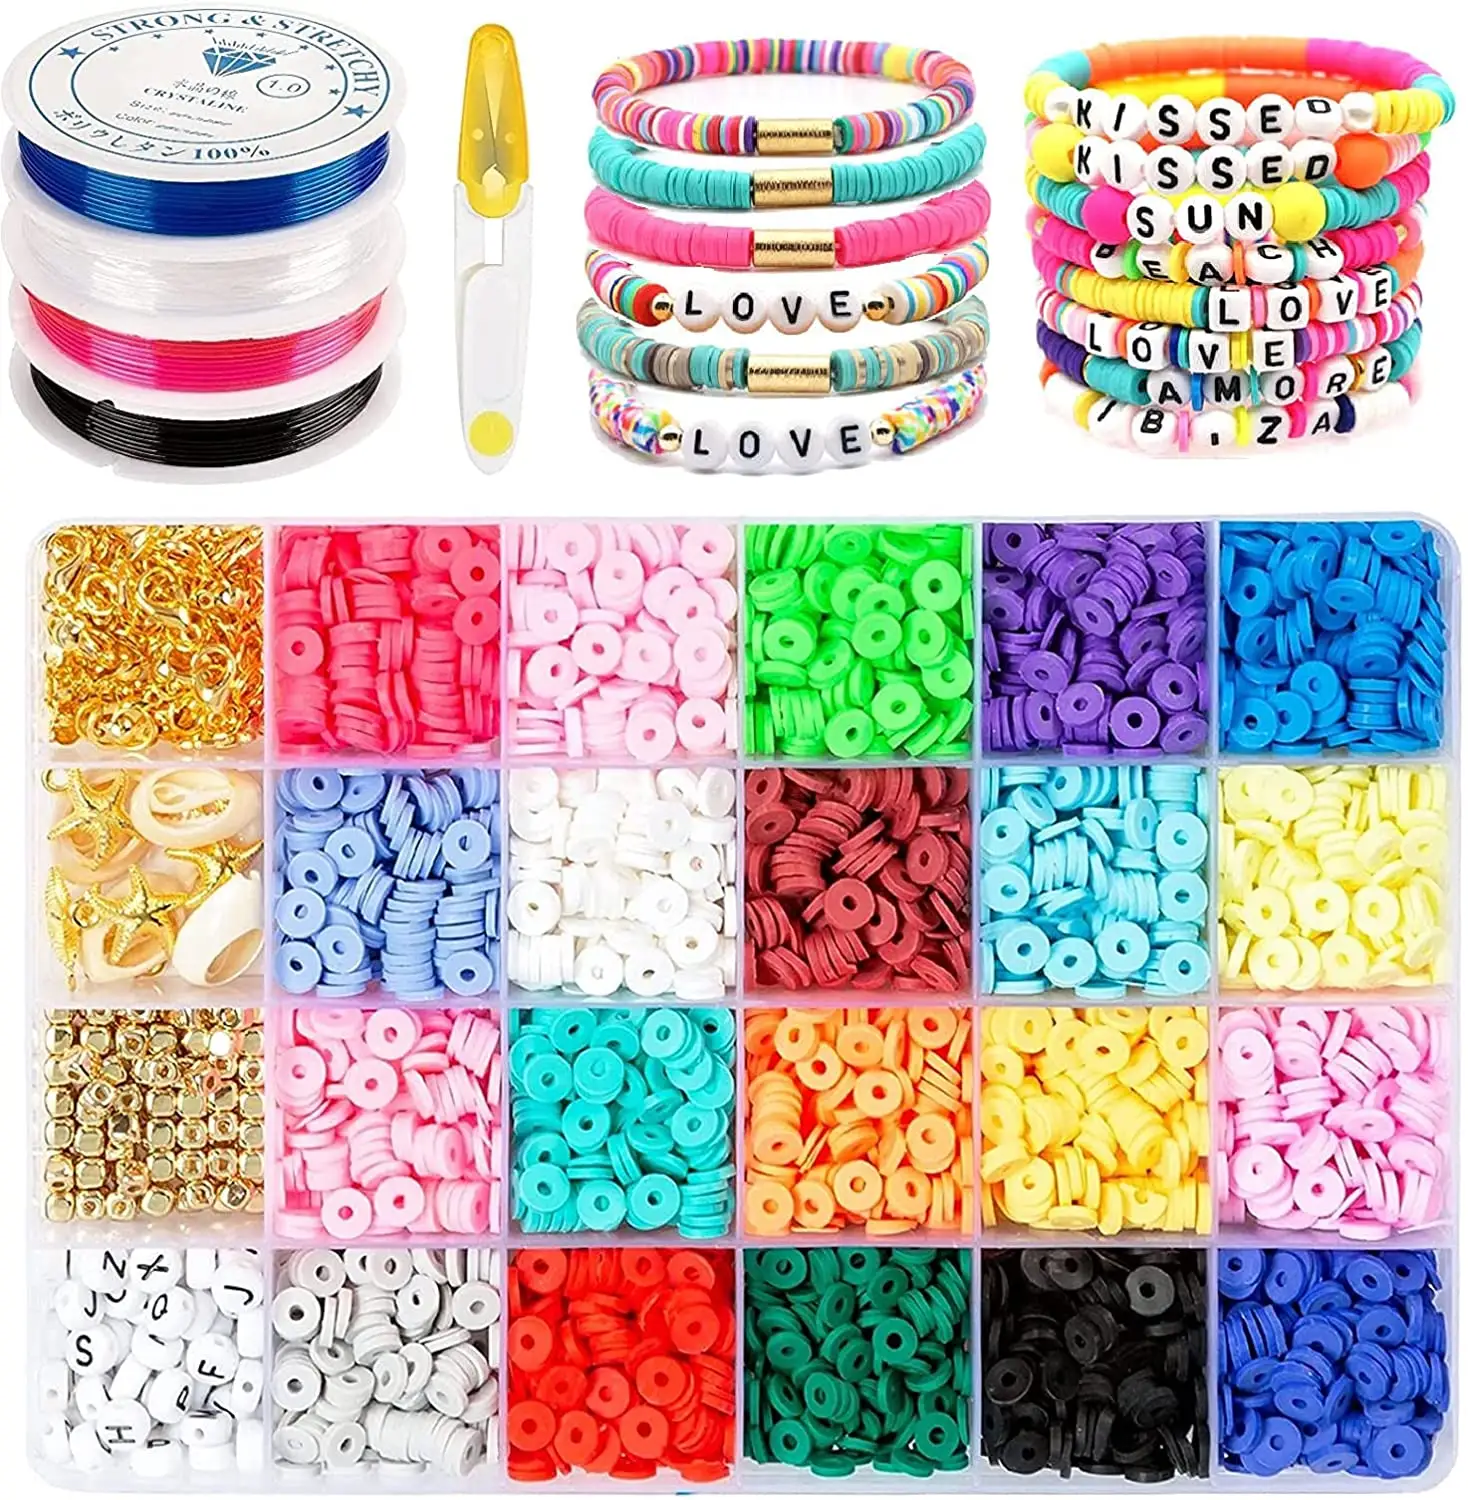 Pulseiras de miçangas personalizadas para meninas, kit de artes e ofícios para fazer joias, kit de design para criar joias bonitas